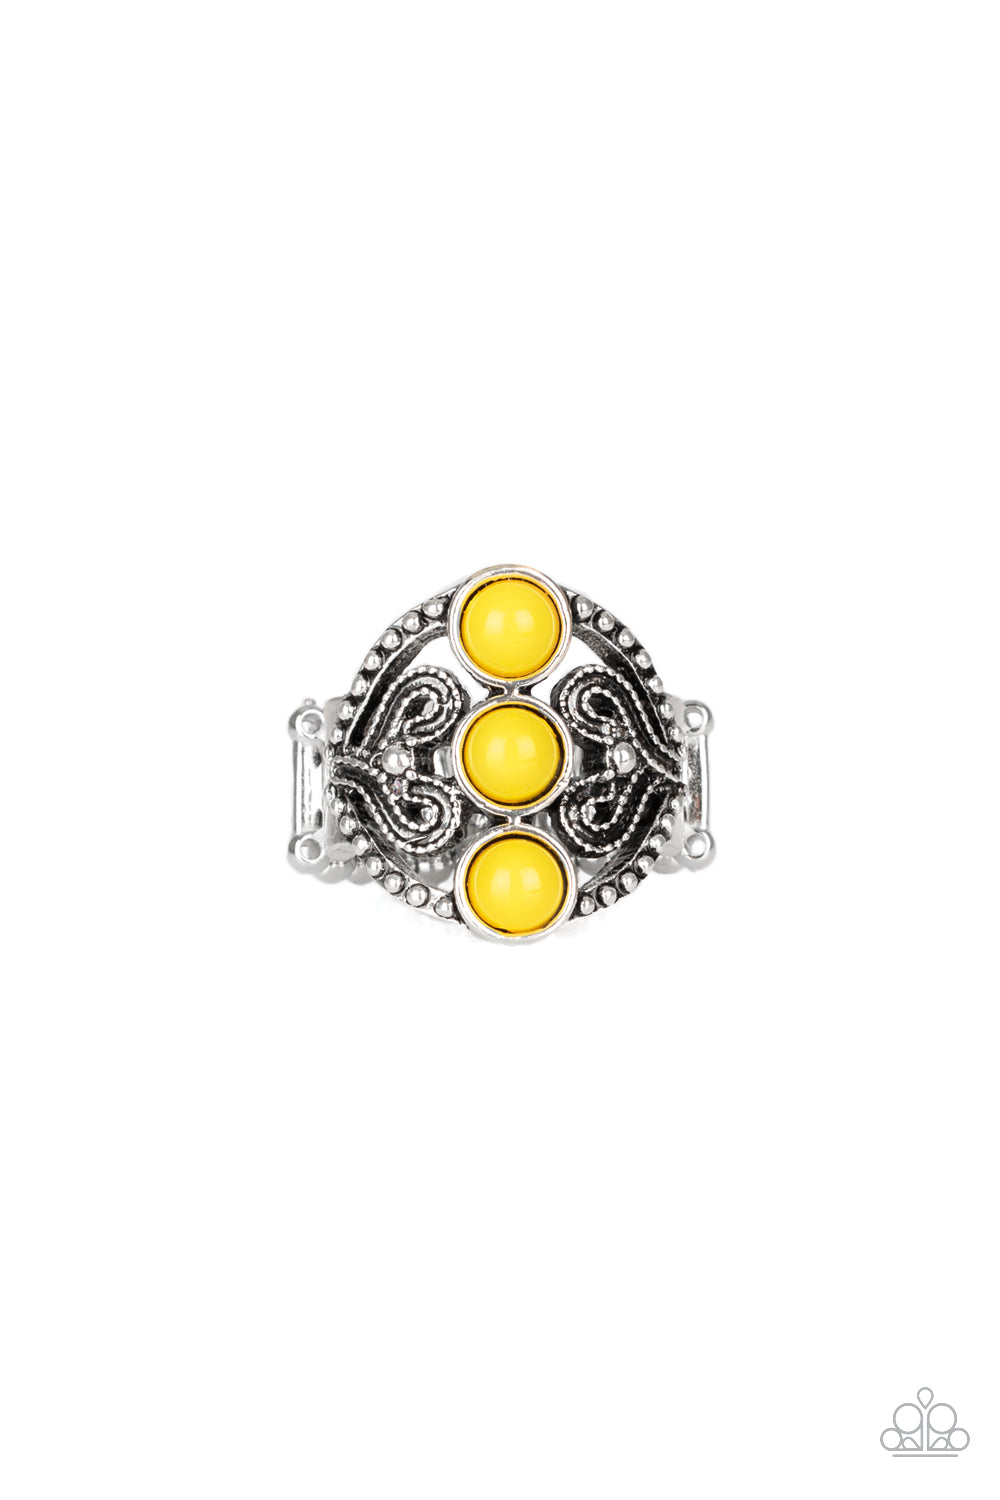 Triple Whammy - Yellow Paparazzi Jewelry 1651